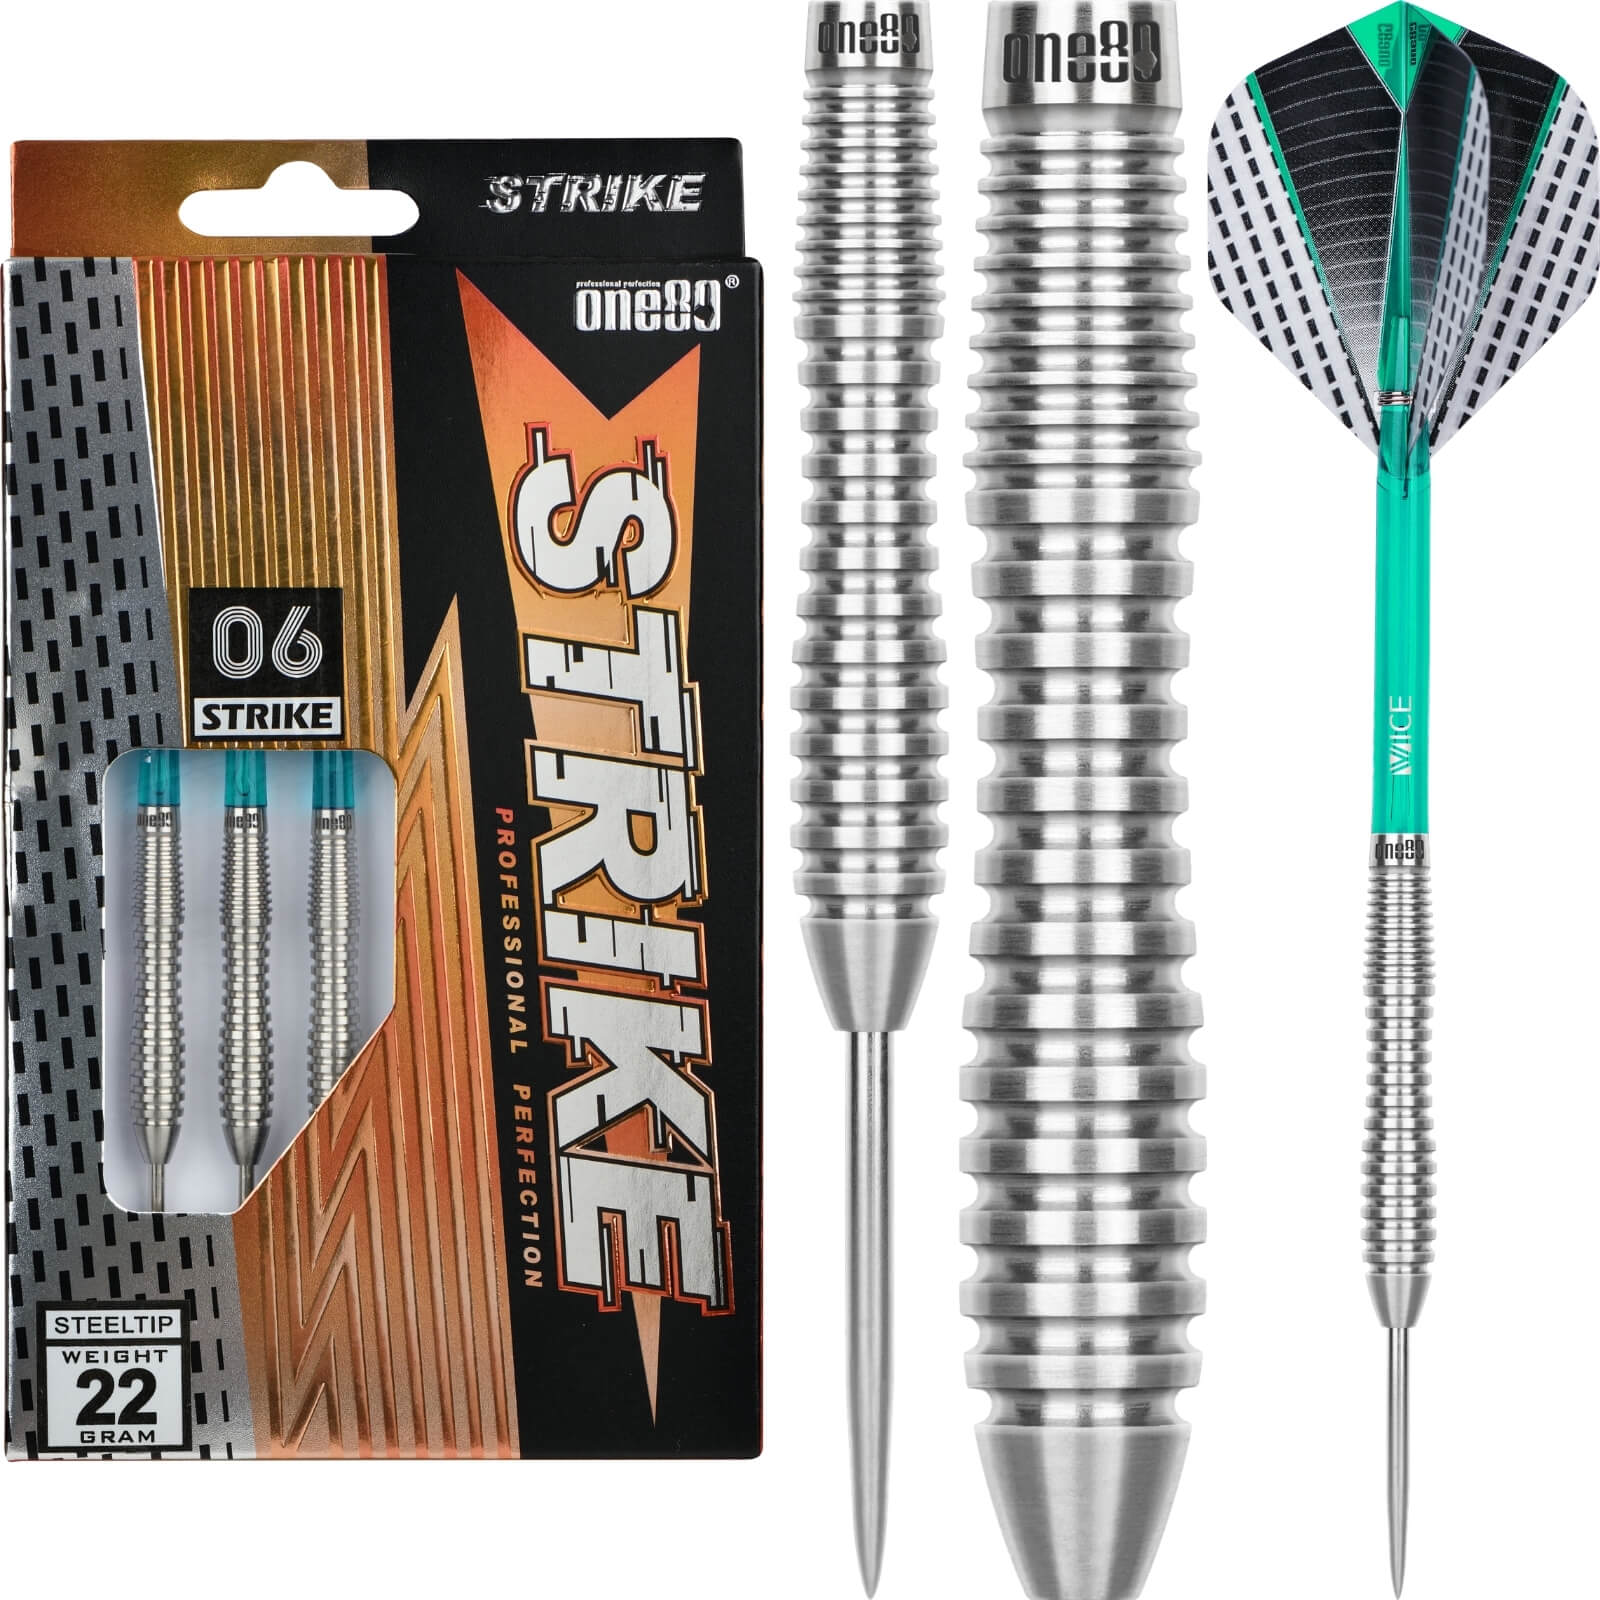 Darts - One80 - Strike 06 Darts - Steel Tip - 80% Tungsten - 22g 24g 